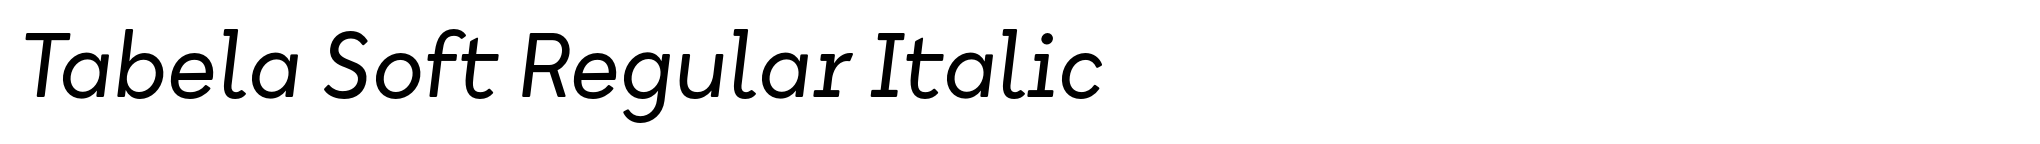 Tabela Soft Regular Italic image